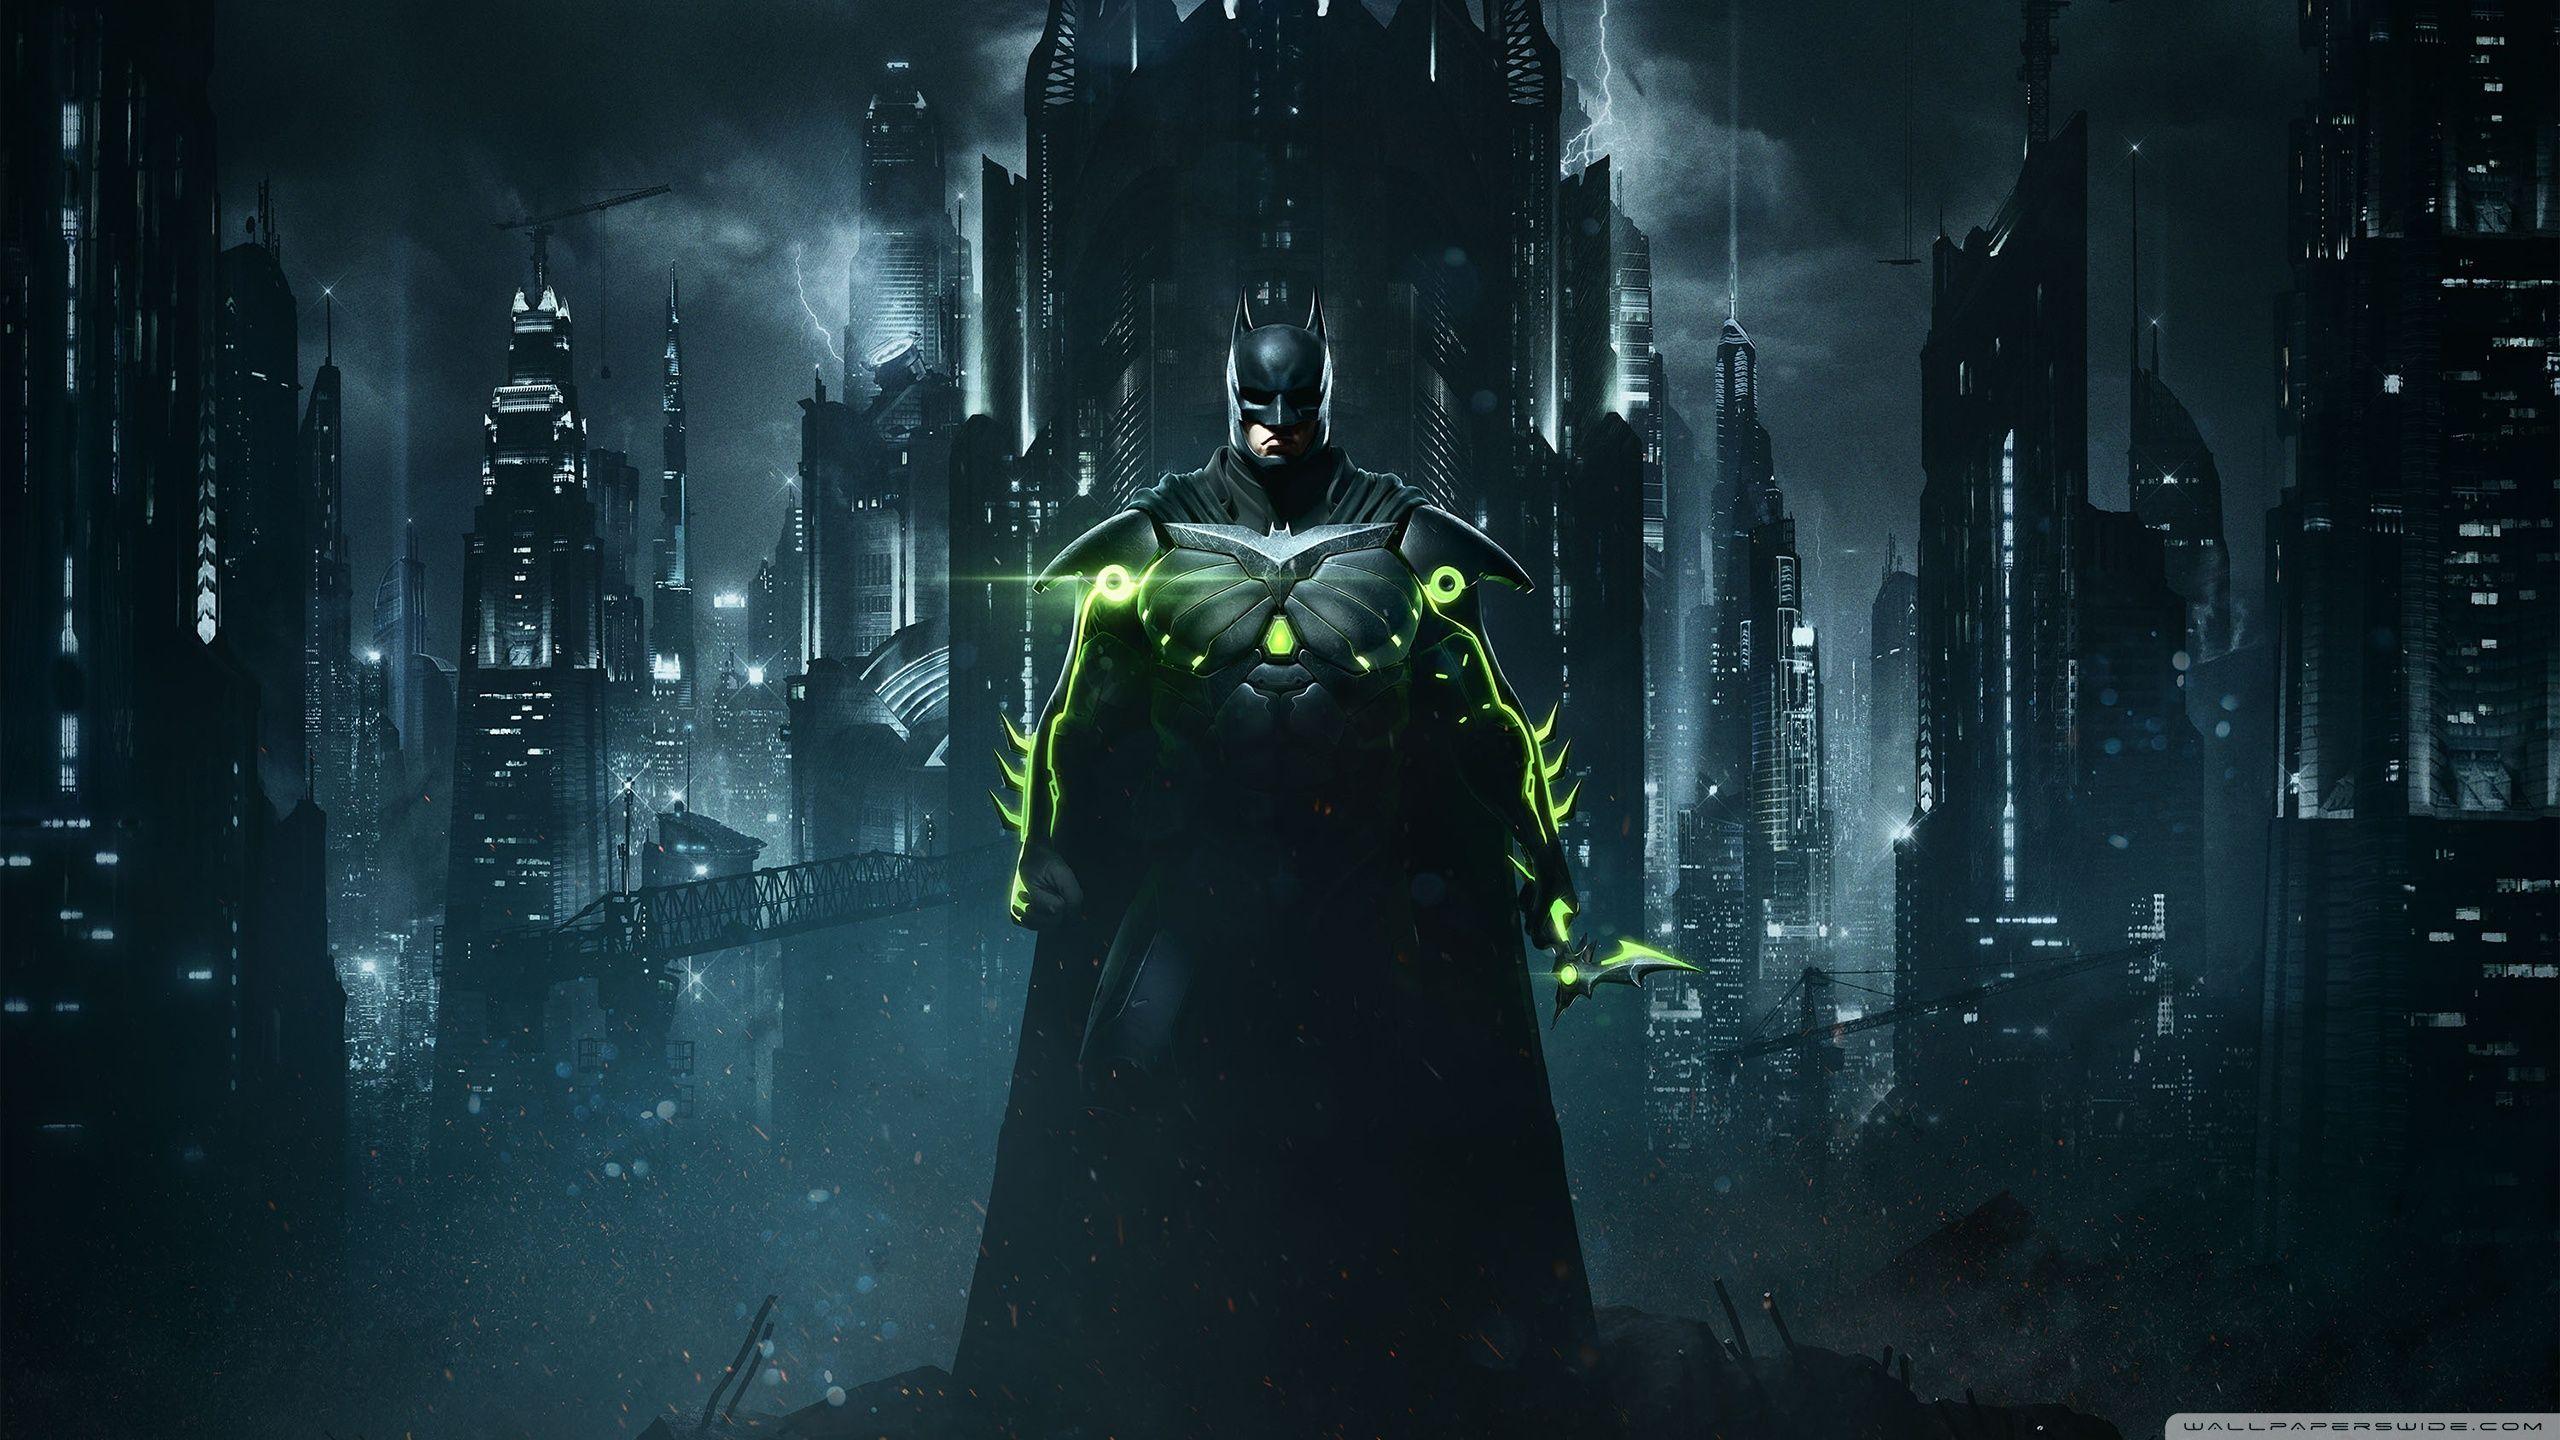 Cool Batman desktop backgrounds for superhero fans